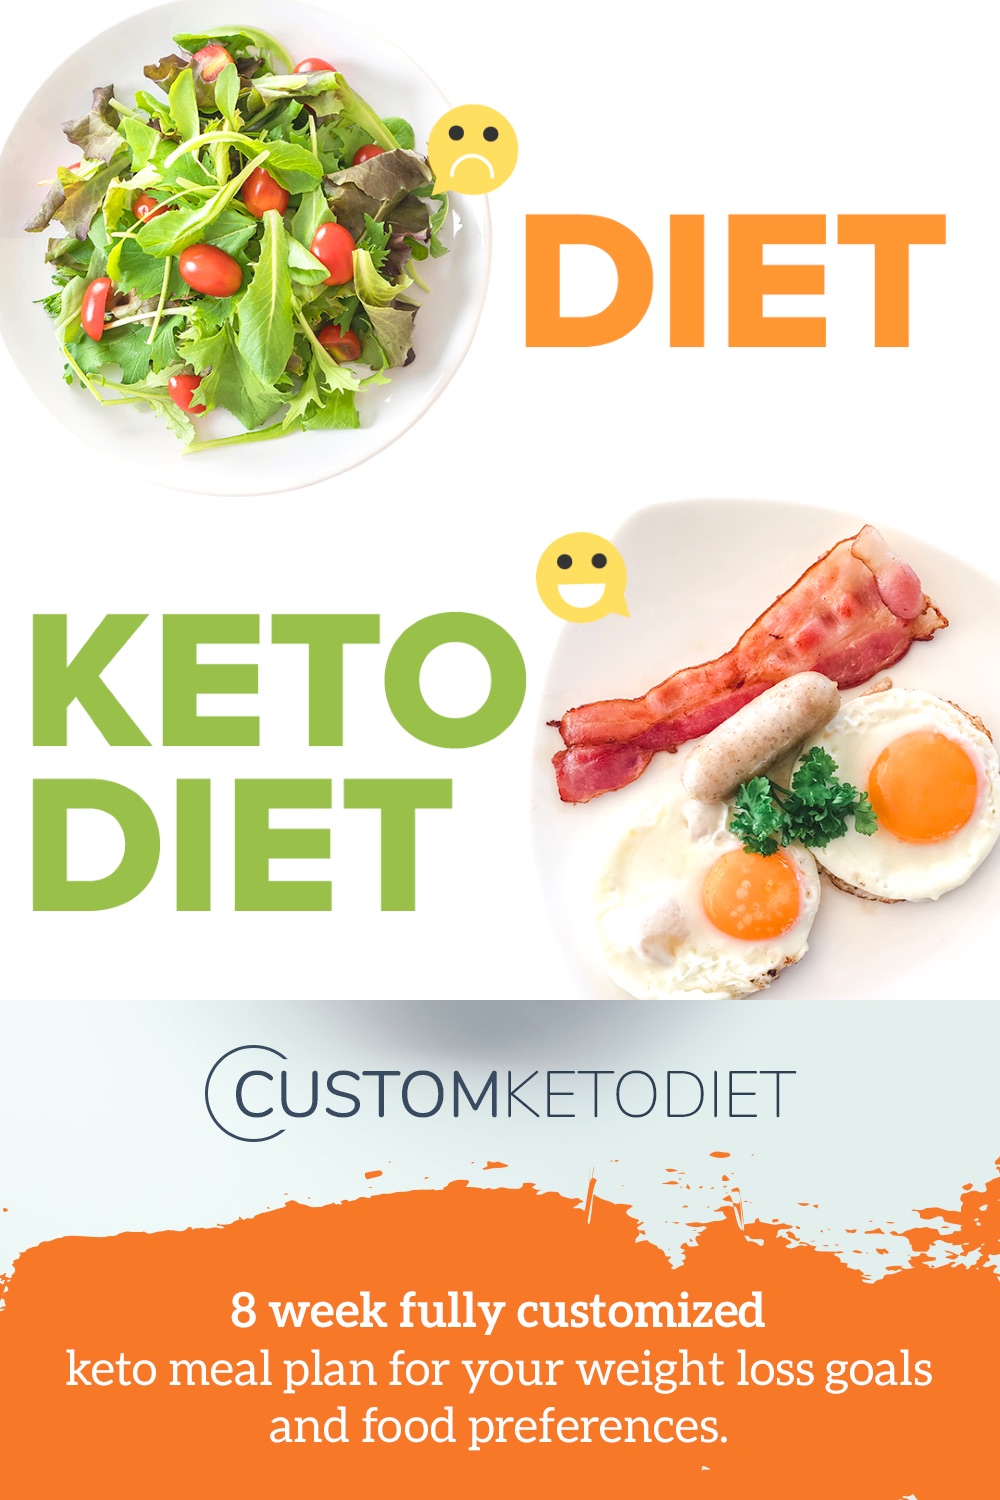 is custom keto diet legit